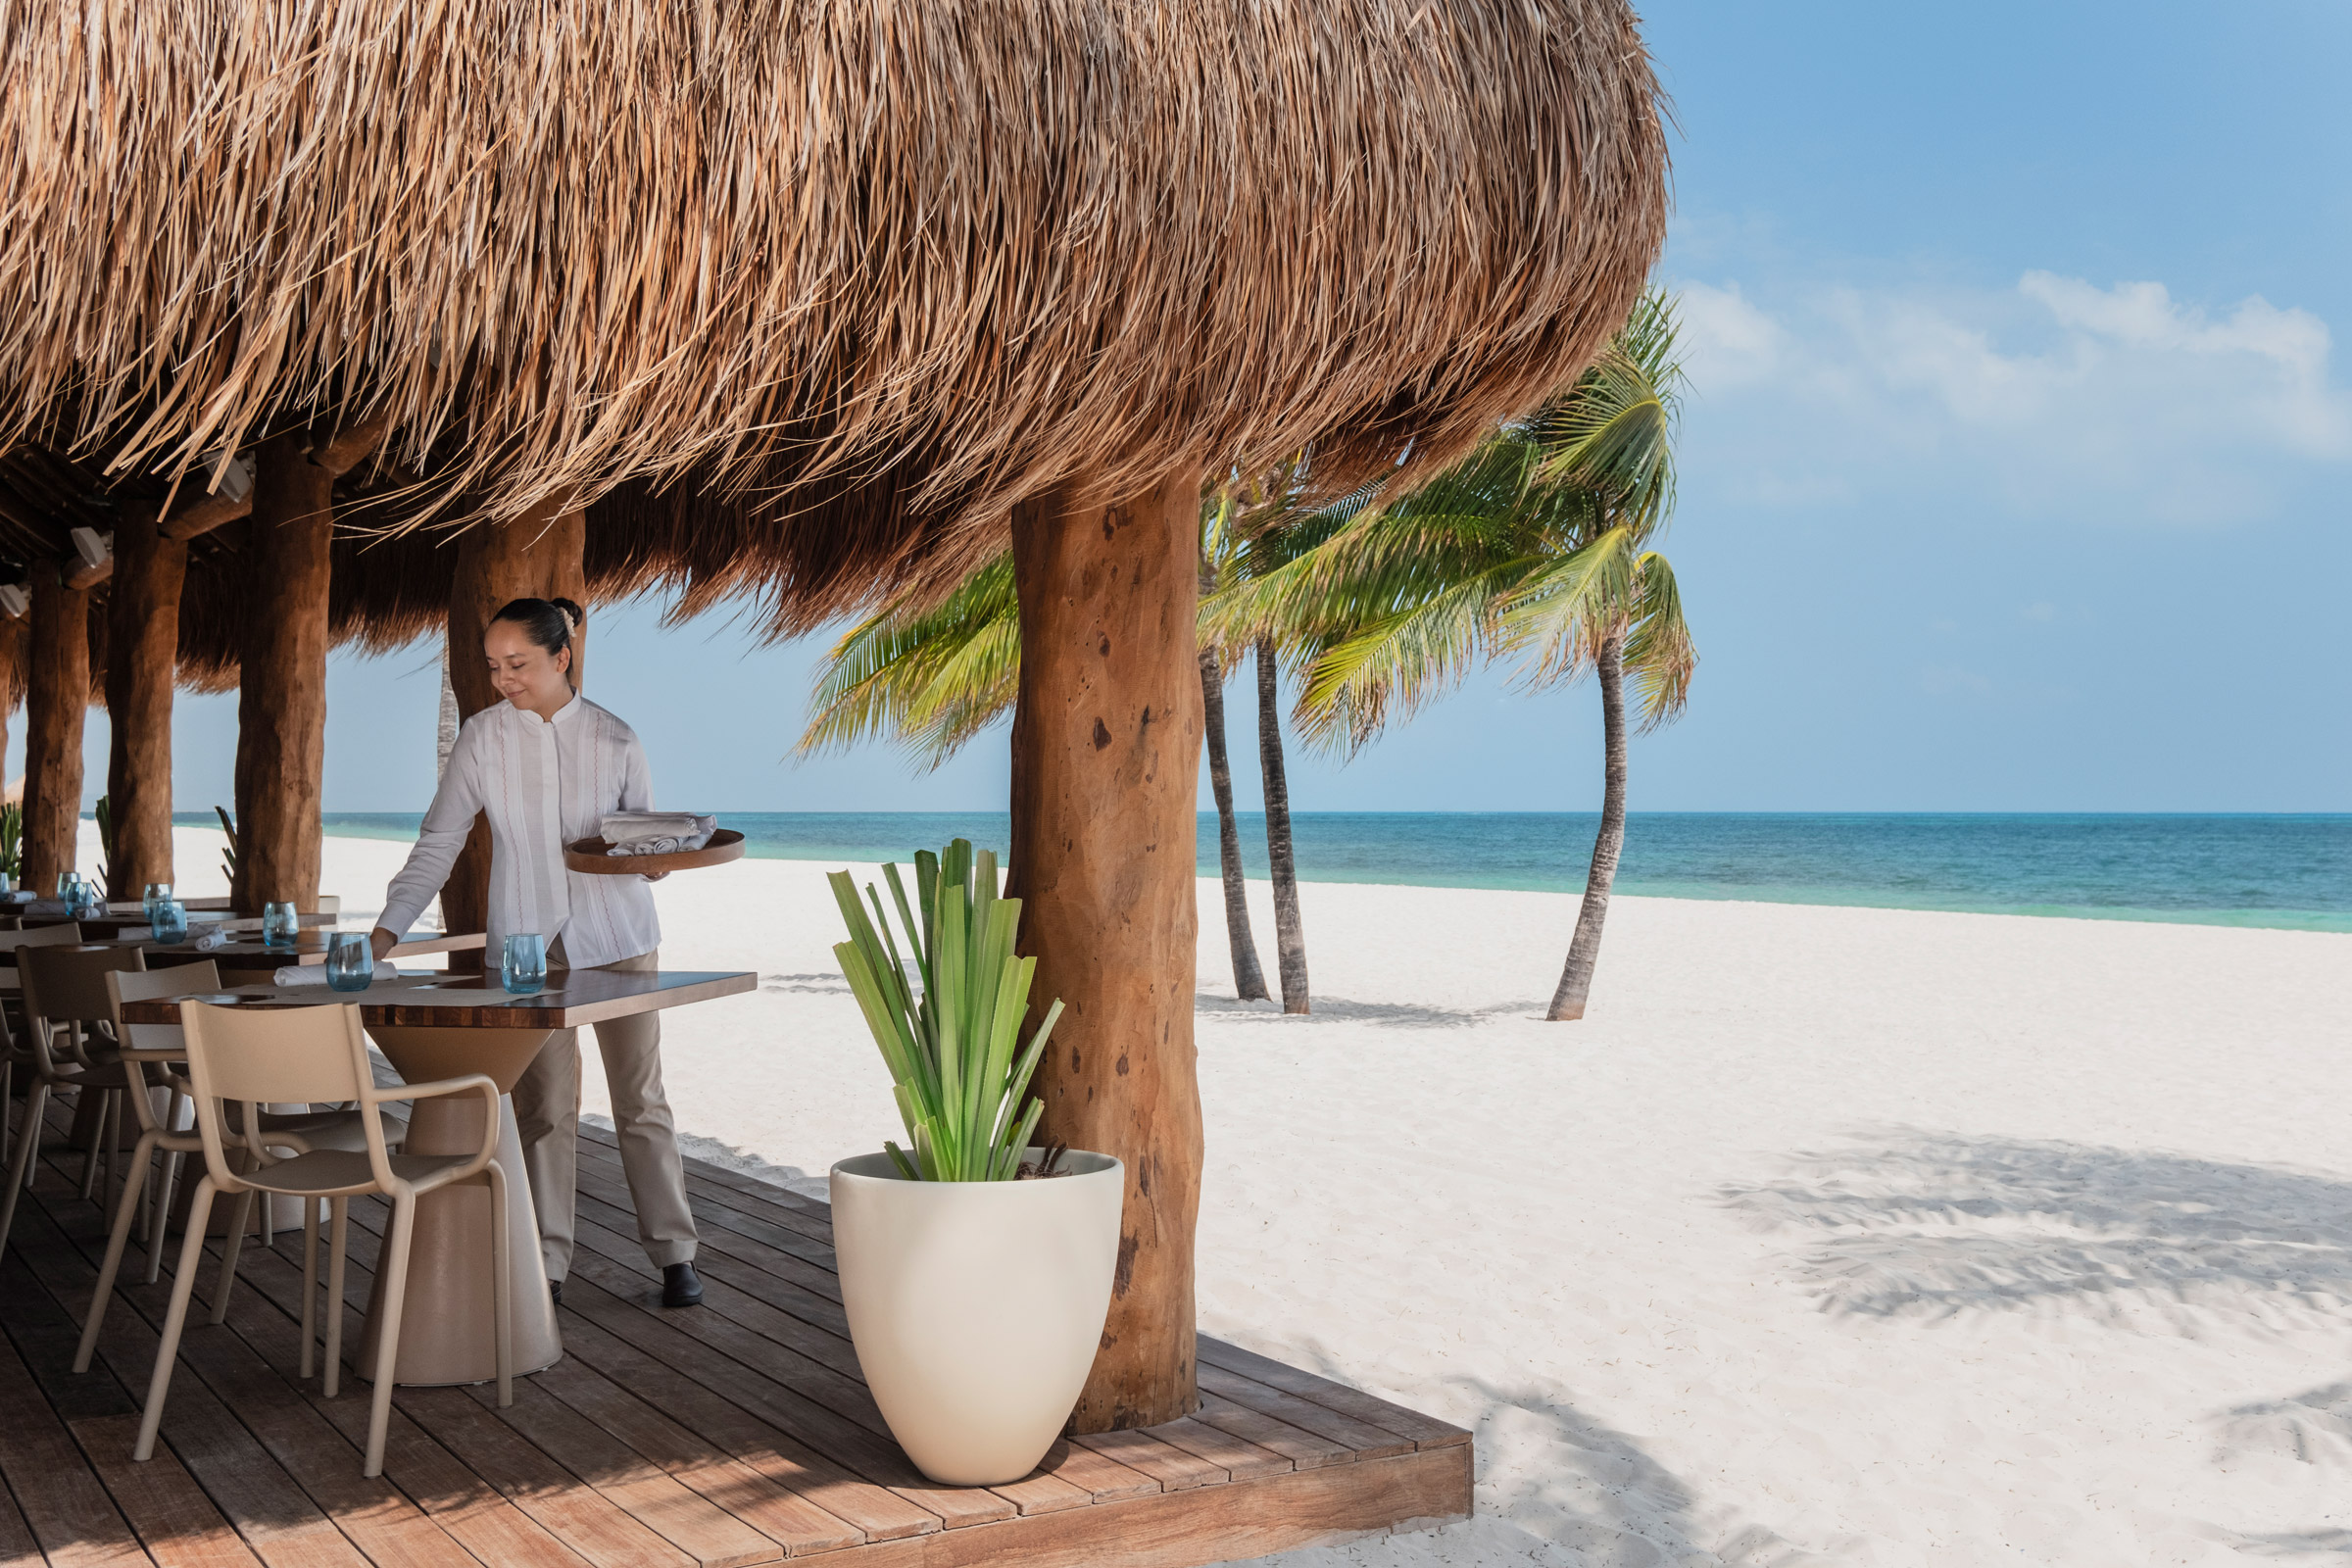 Beachfront restaurant in Playa Mujeres, Cancun